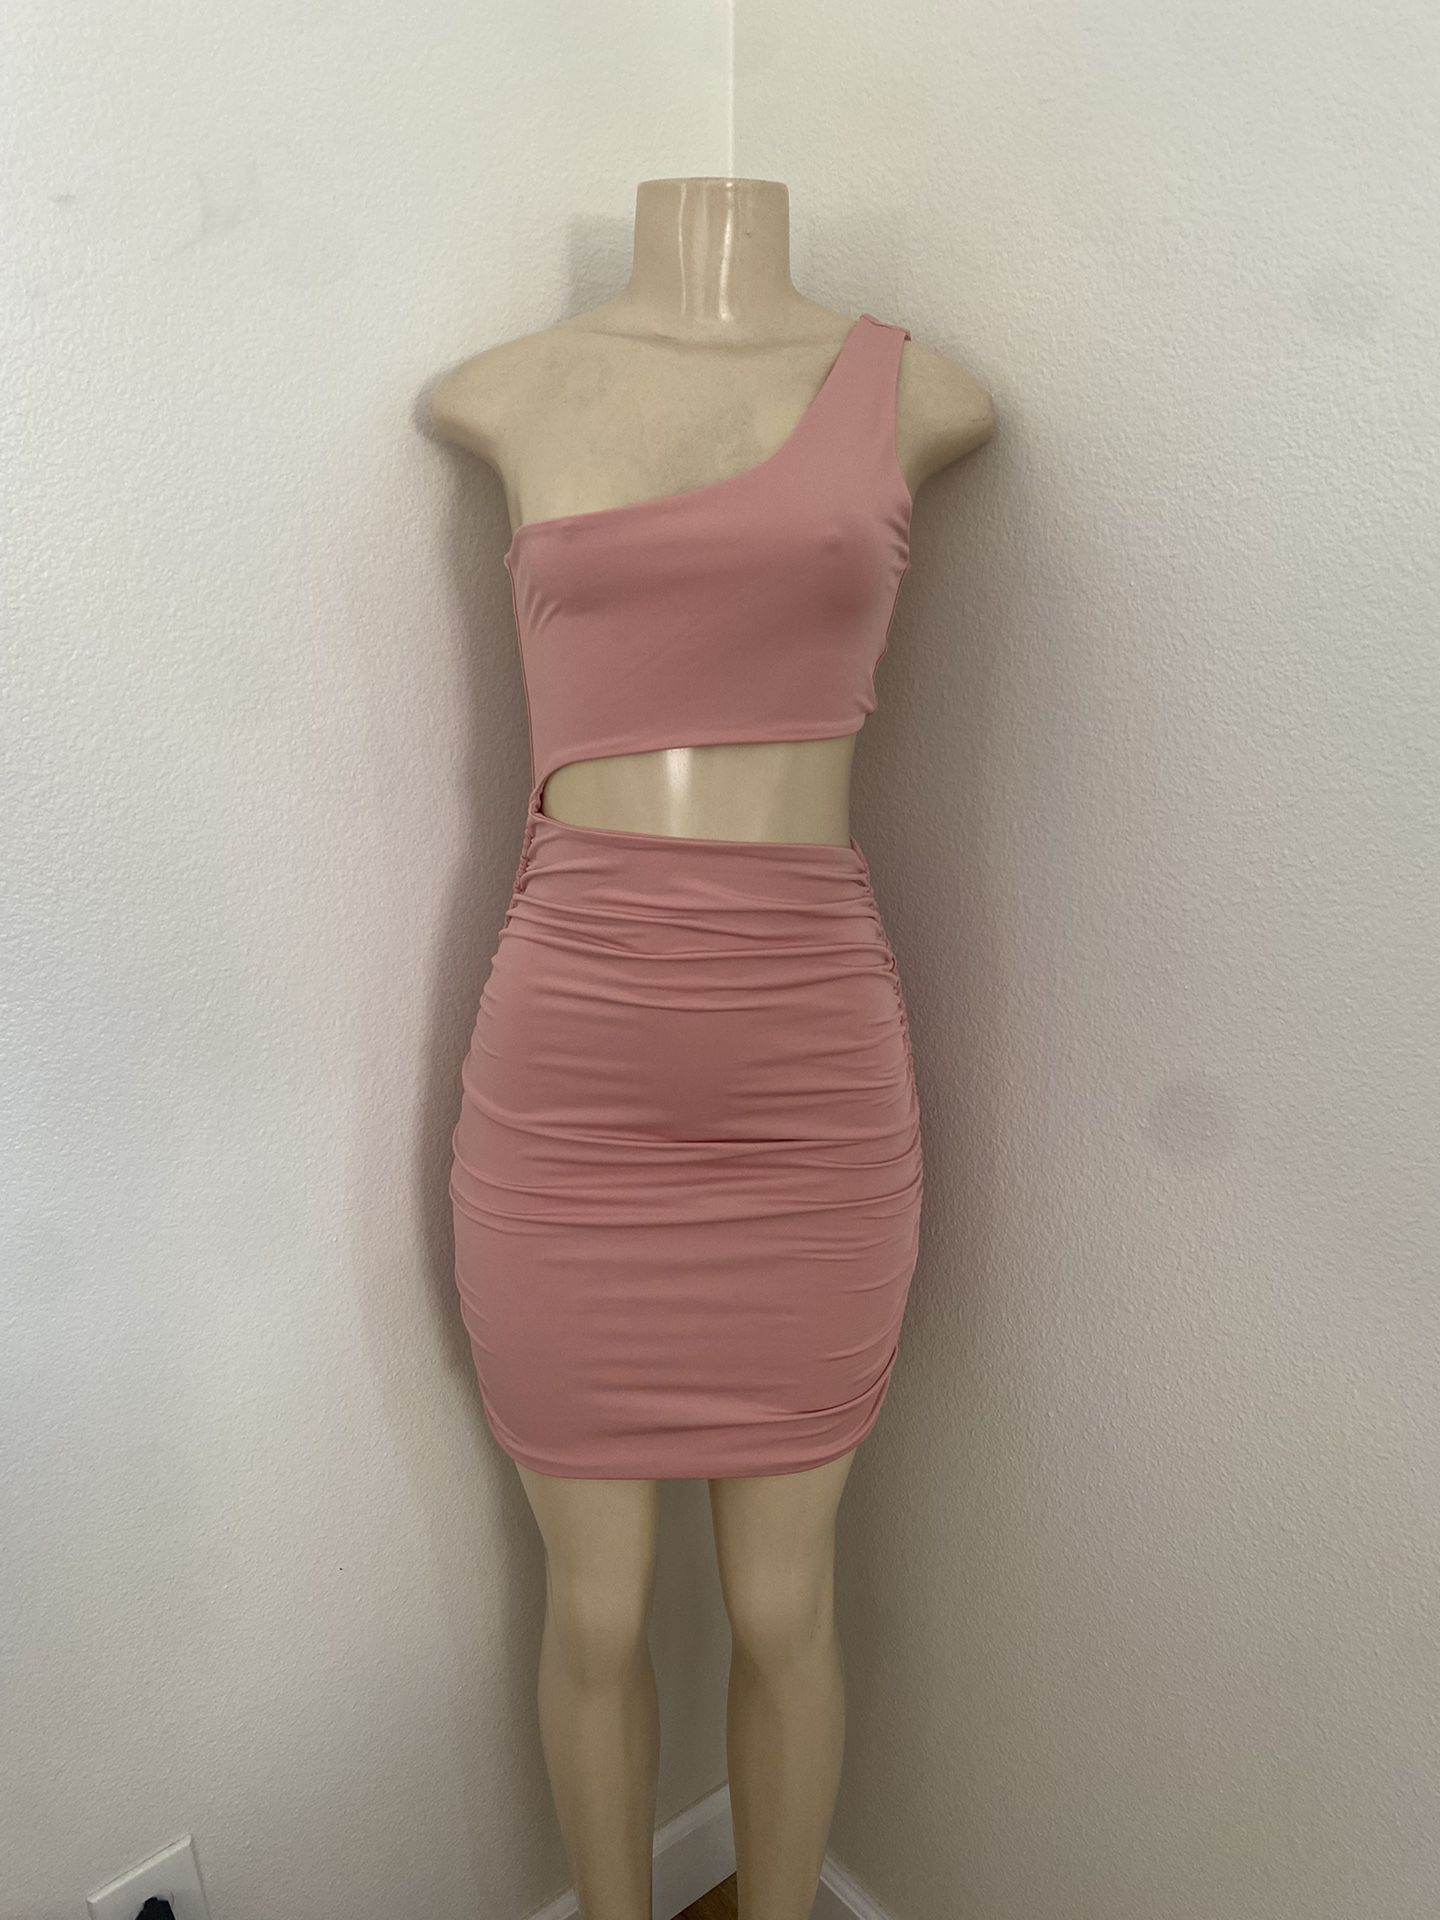 Shein One Shoulder Pink Dress - Size Medium 